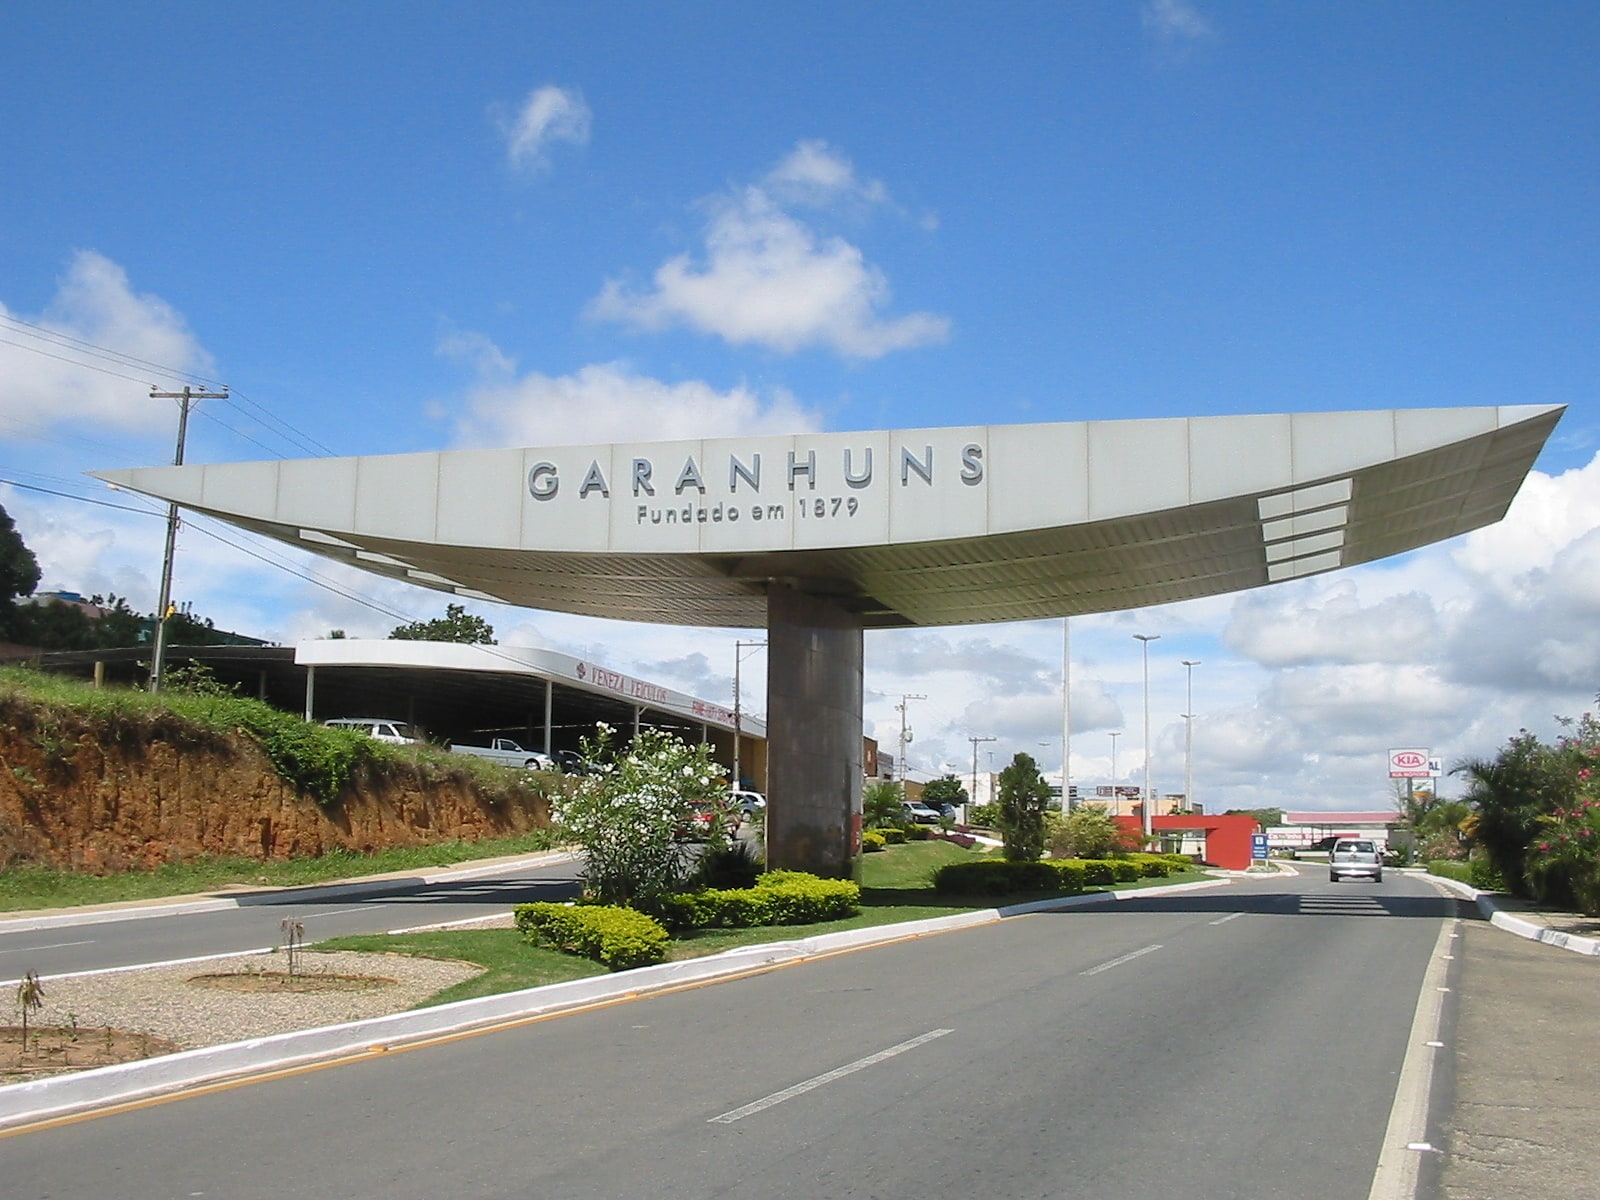 Garanhuns, Brazil